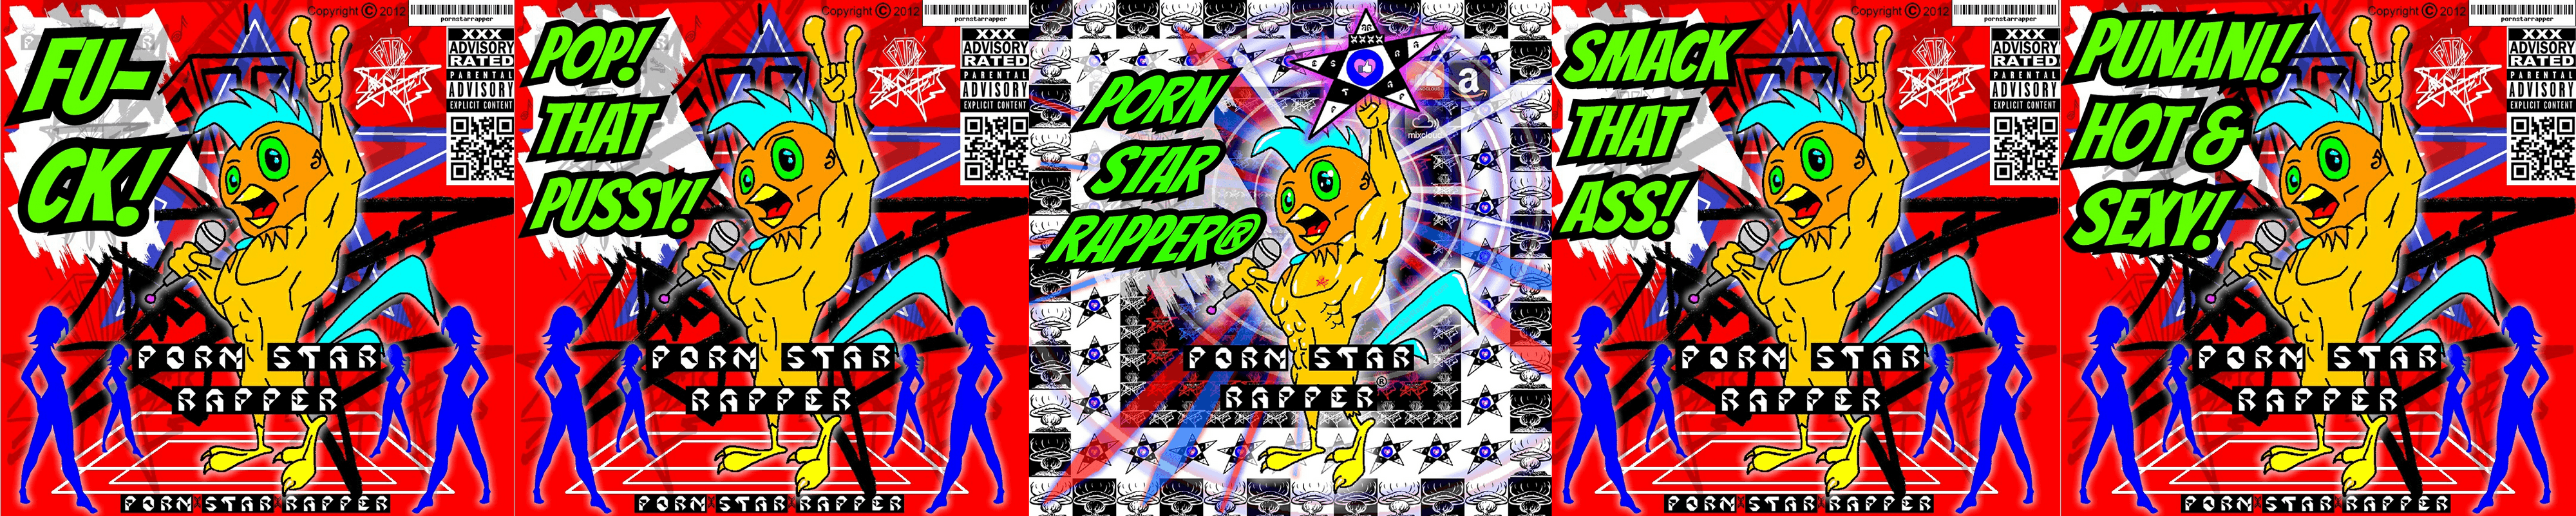 PornStarRapper banner